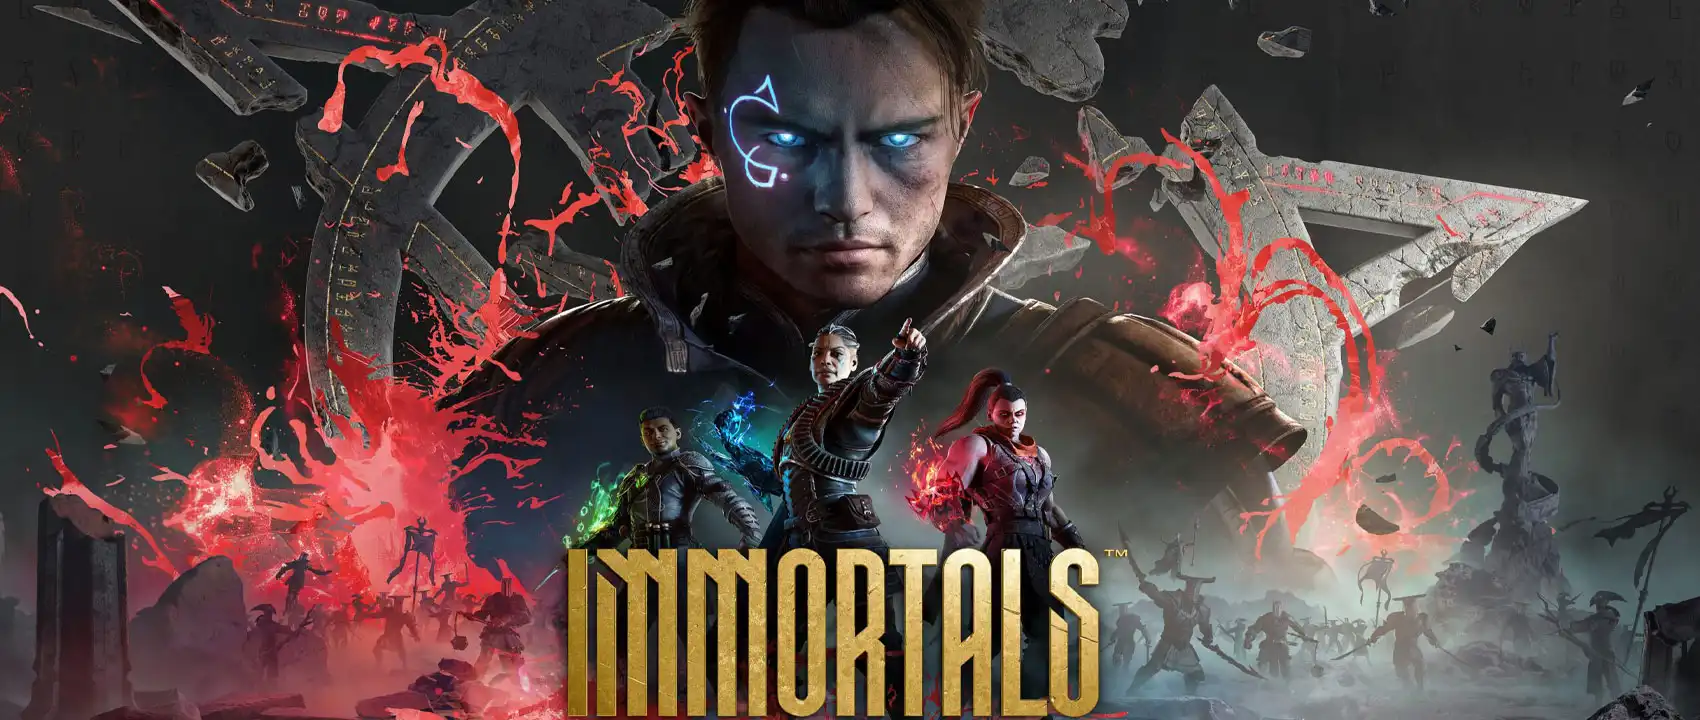 بازی Immortals of Aveum برای PS5